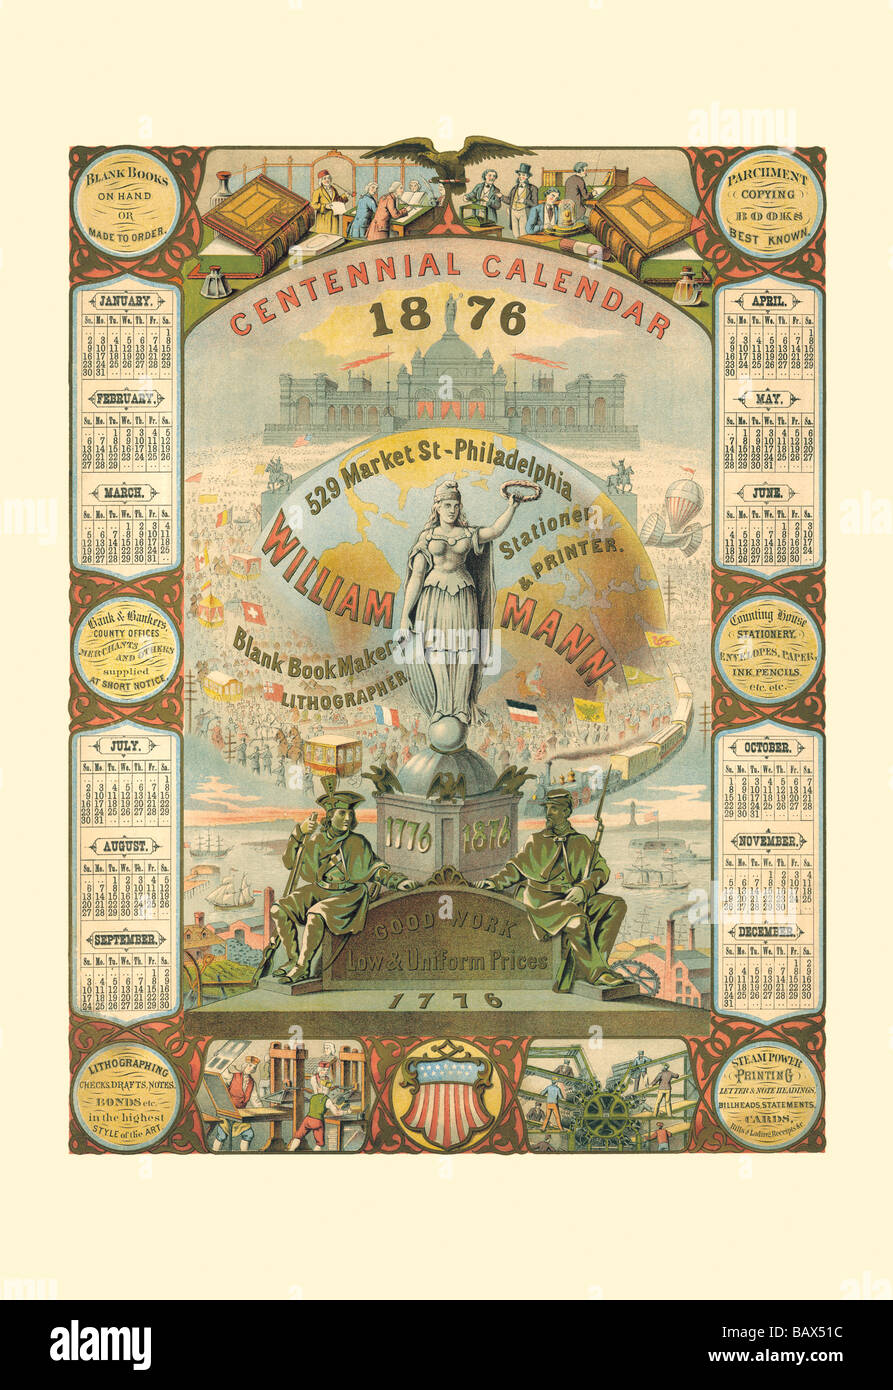 William Mann 1876 Centennial Calendar Stock Photo